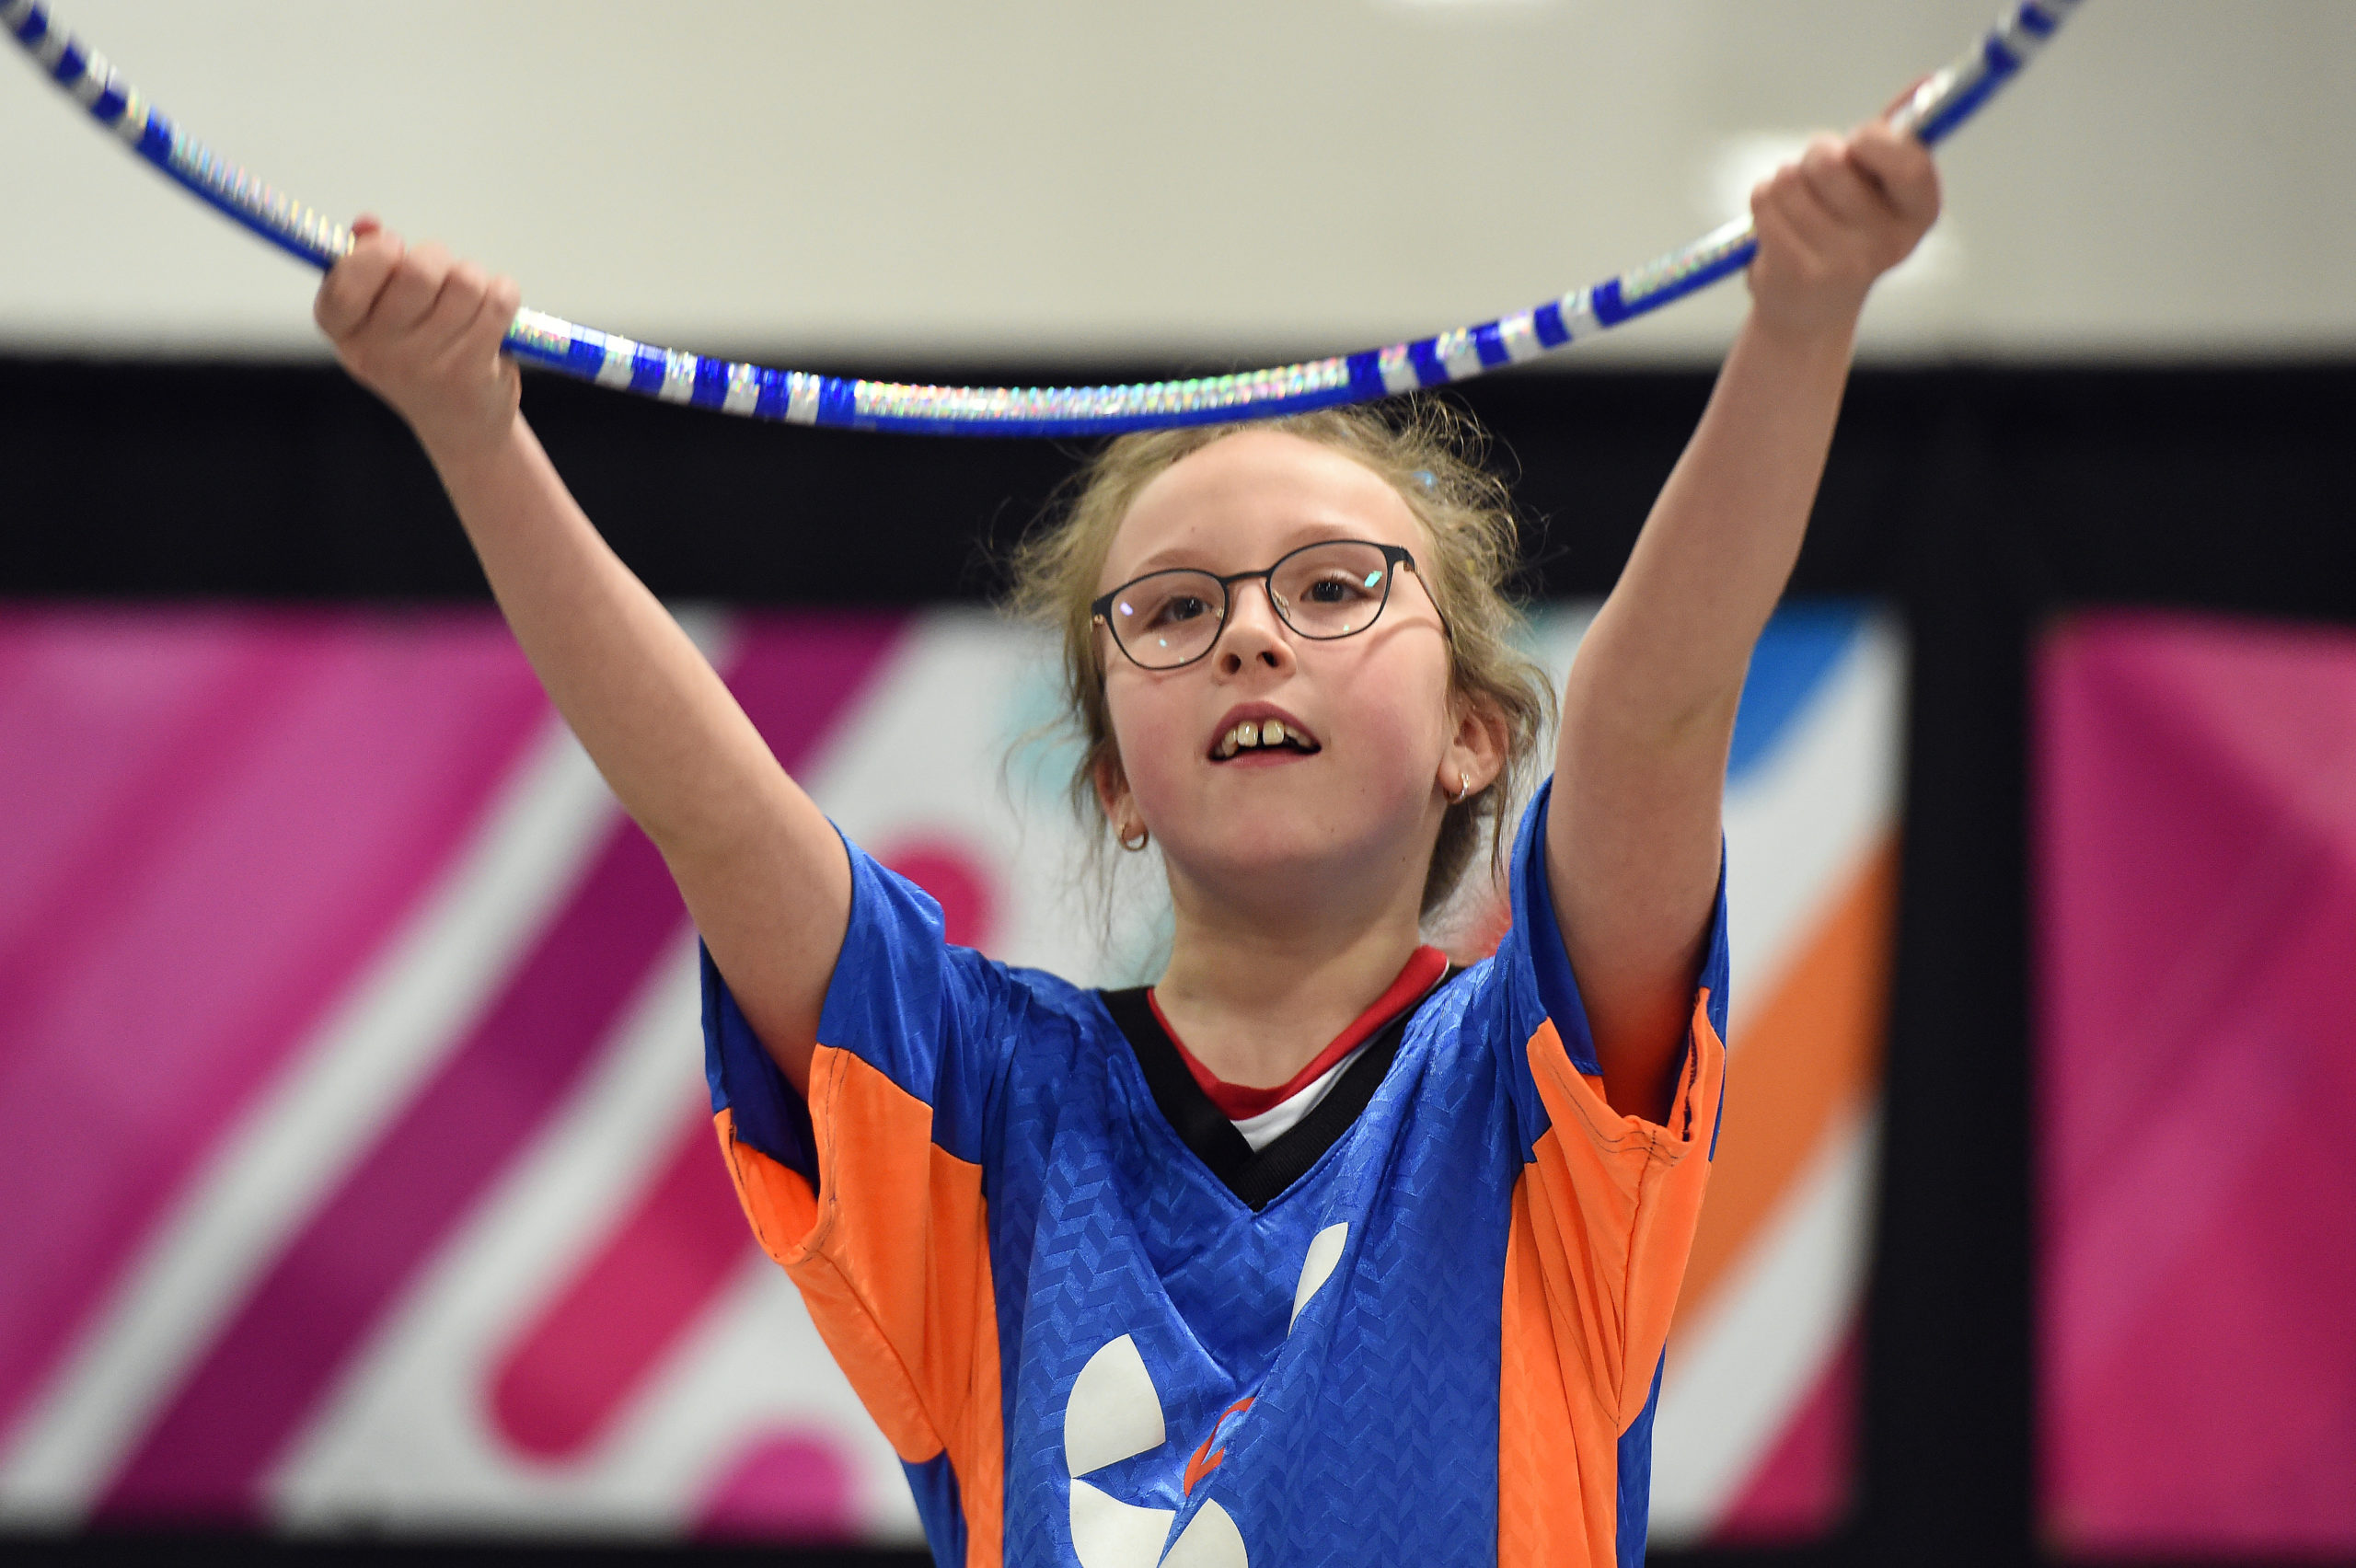 Une jeune fille tient un cerceau à bout de bras pendant sa routine de gymnastique rythmique.